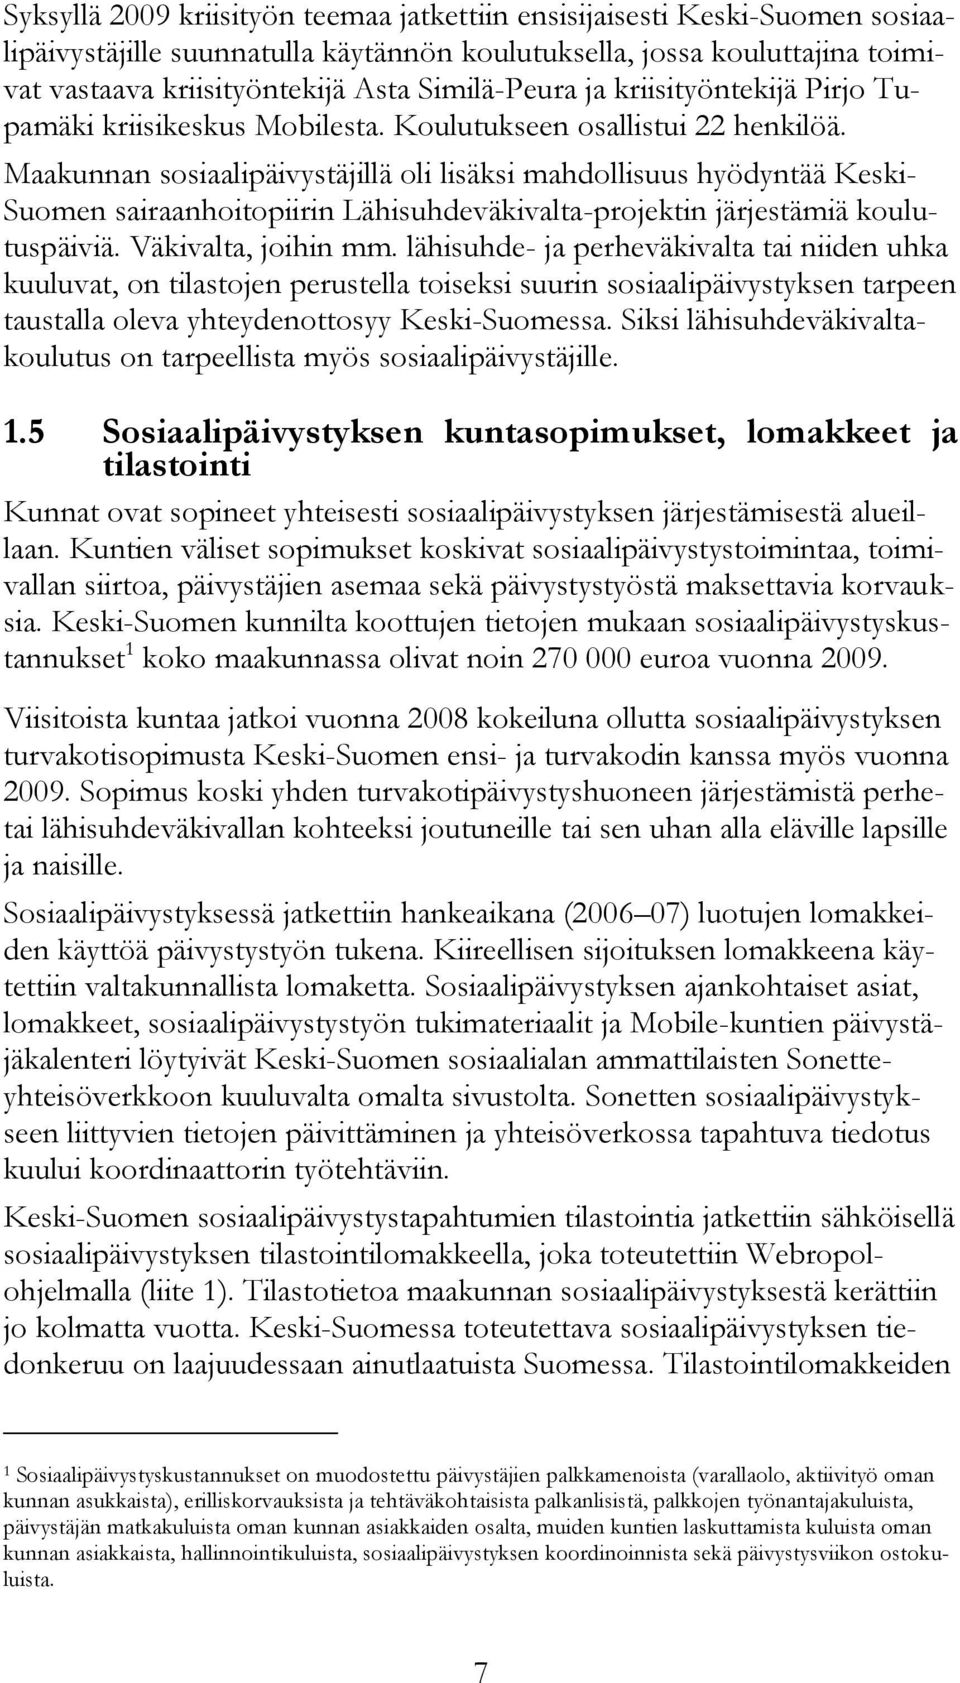 Maakunnan sosiaalipäivystäjillä oli lisäksi mahdollisuus hyödyntää Keski- Suomen sairaanhoitopiirin Lähisuhdeväkivalta-projektin järjestämiä koulutuspäiviä. Väkivalta, joihin mm.